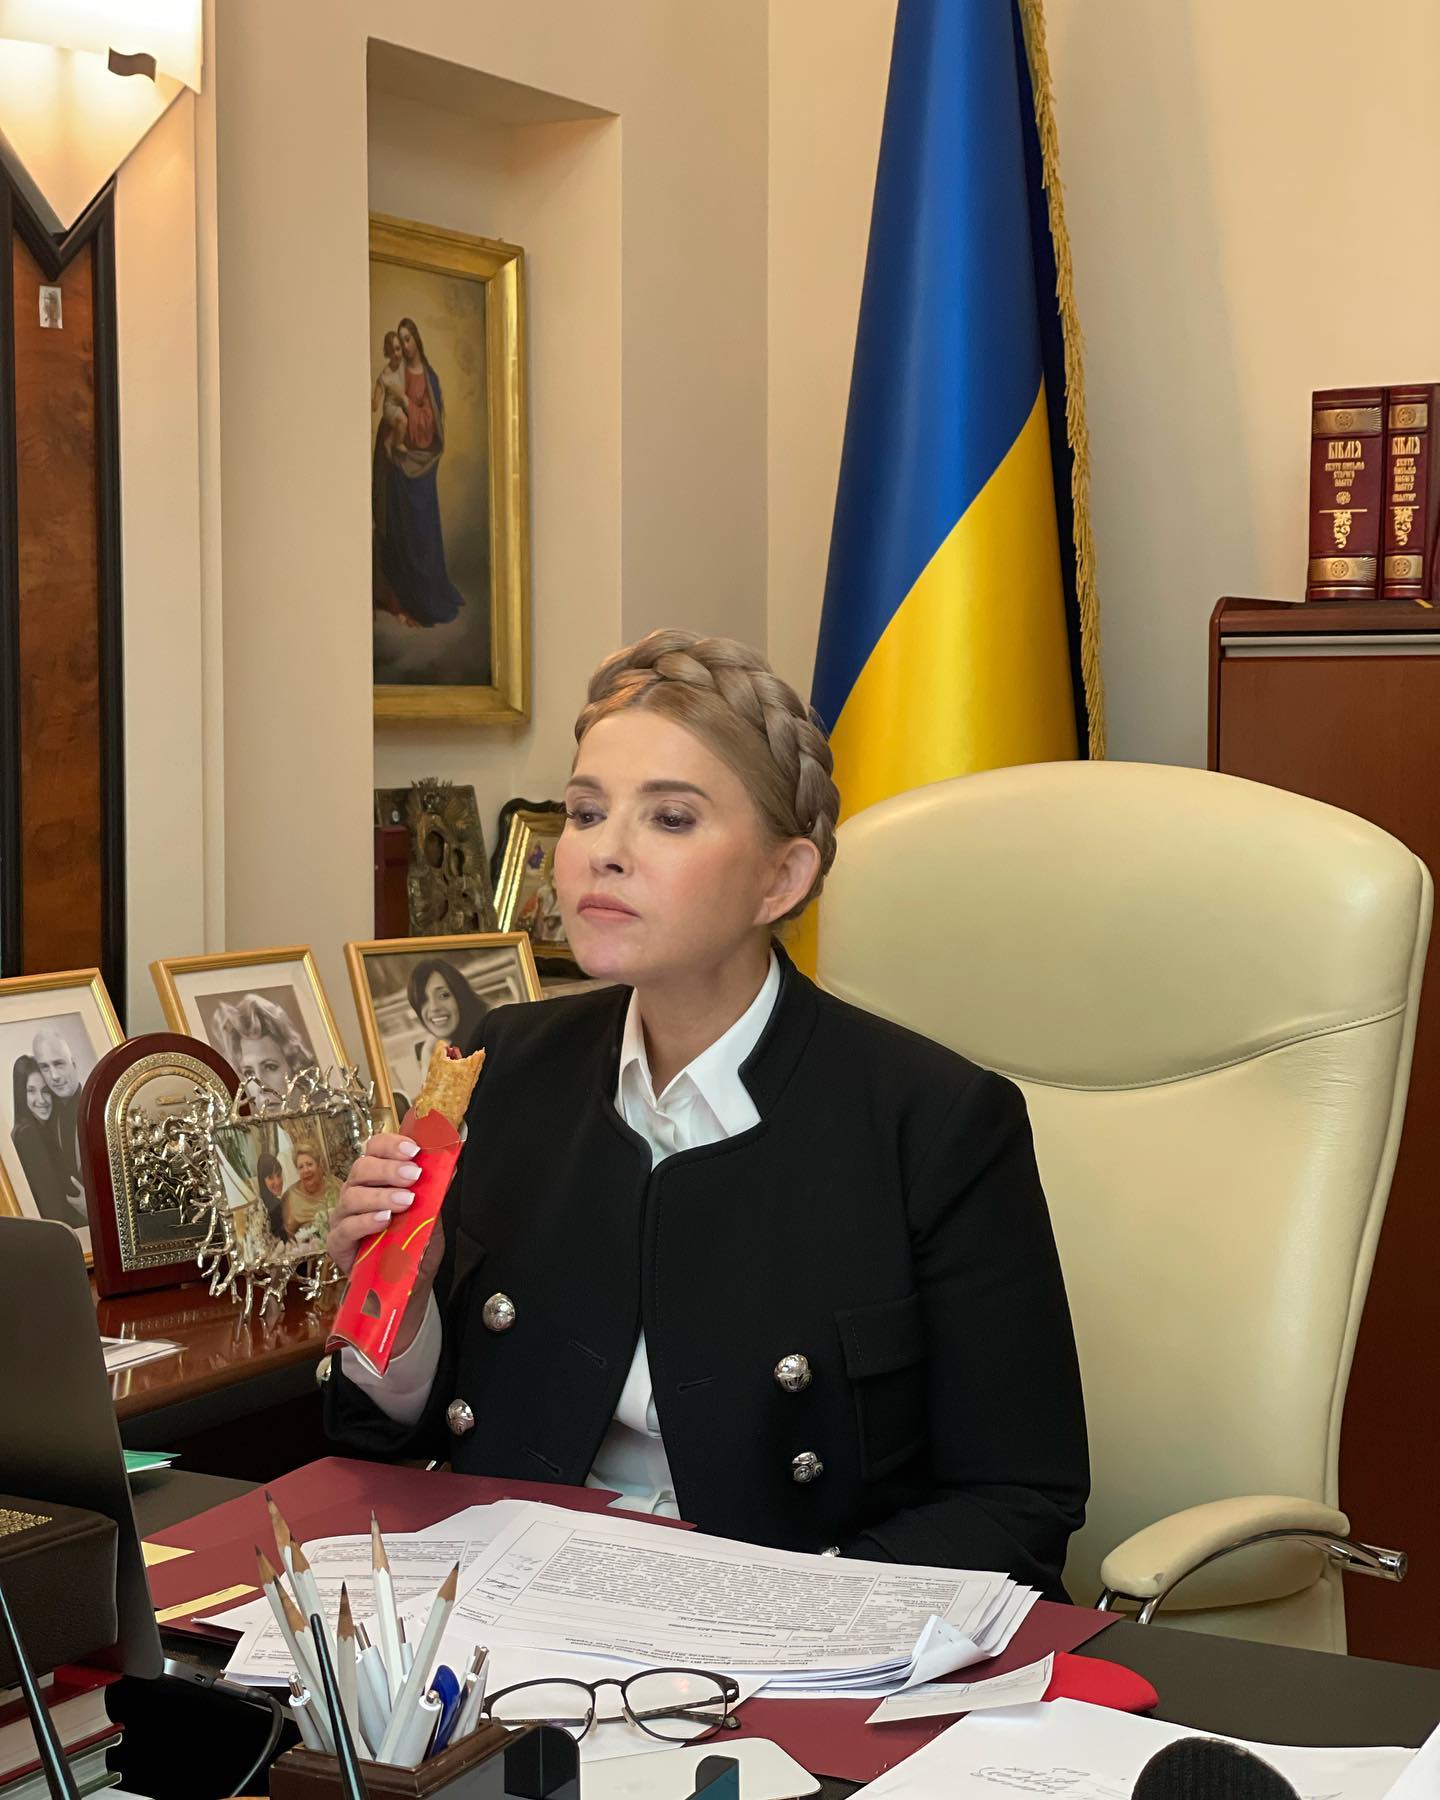 “Пирожок с вишнями“: Юлия Тимошенко похвасталась ужином из McDonald's – редкое фото депутата